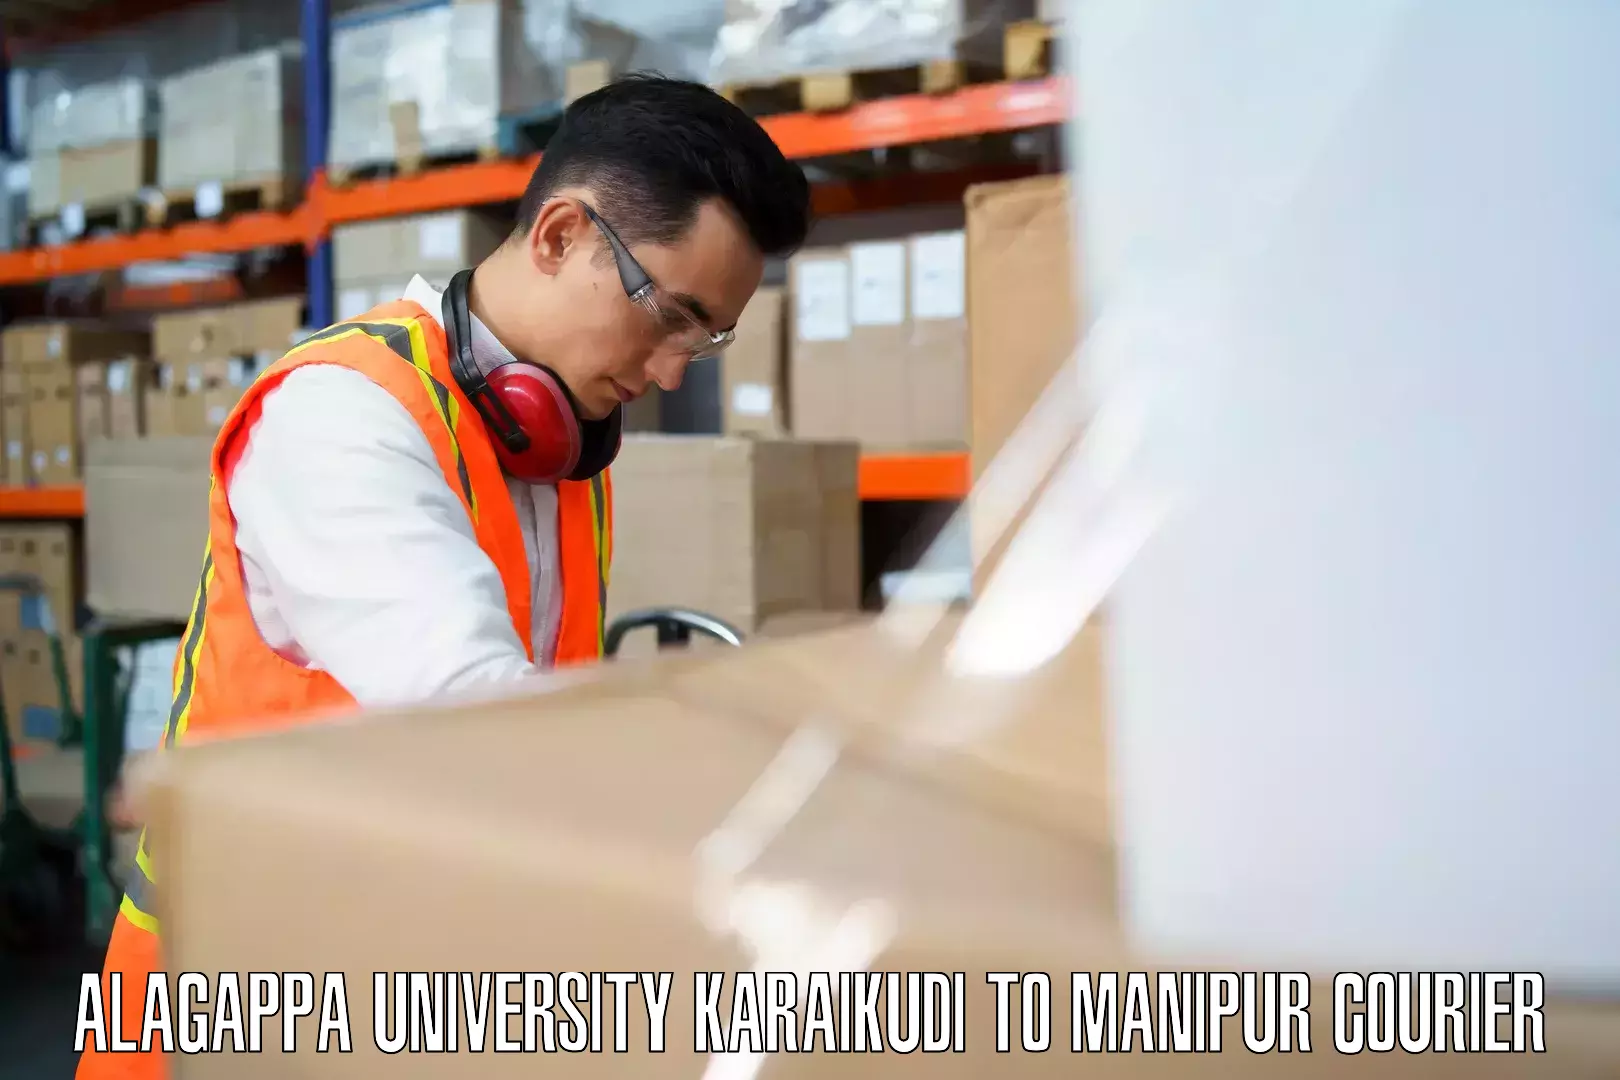 Baggage transport network Alagappa University Karaikudi to Kangpokpi